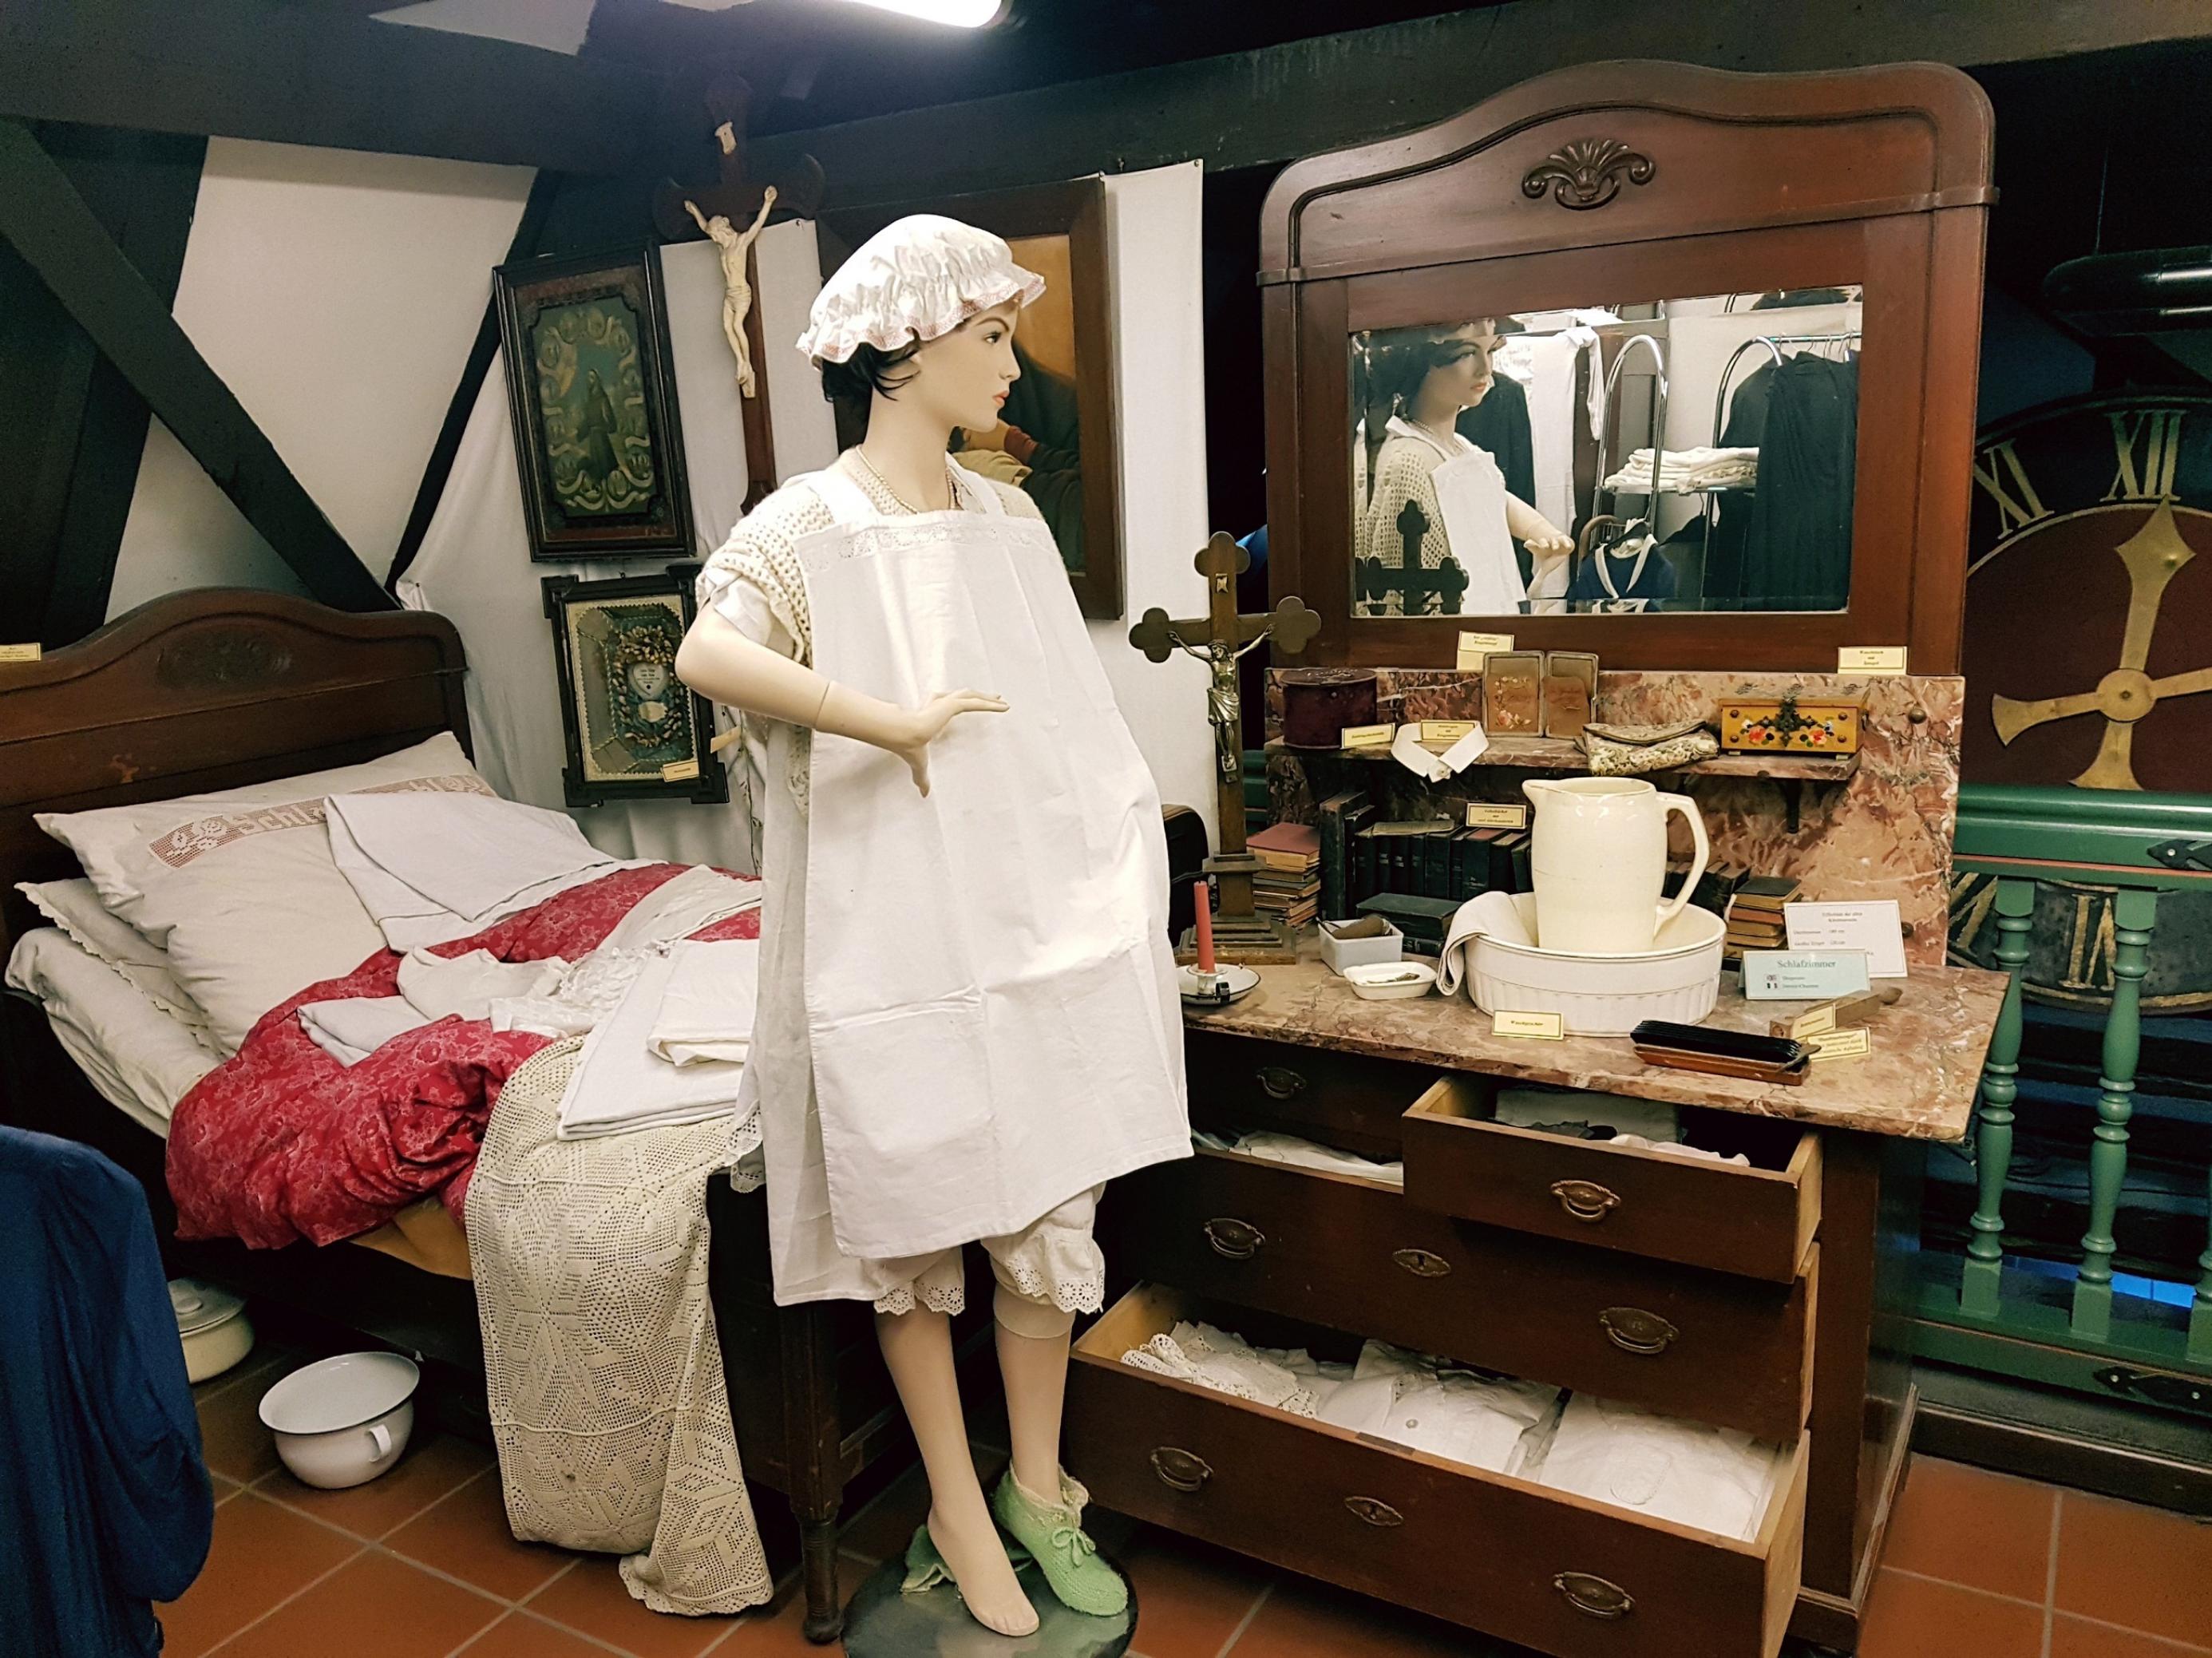 Eine Puppe mit alten Kleidern vor einem alten Spiegel, im Hintergrund ein Bett mit weißer Wäsche.